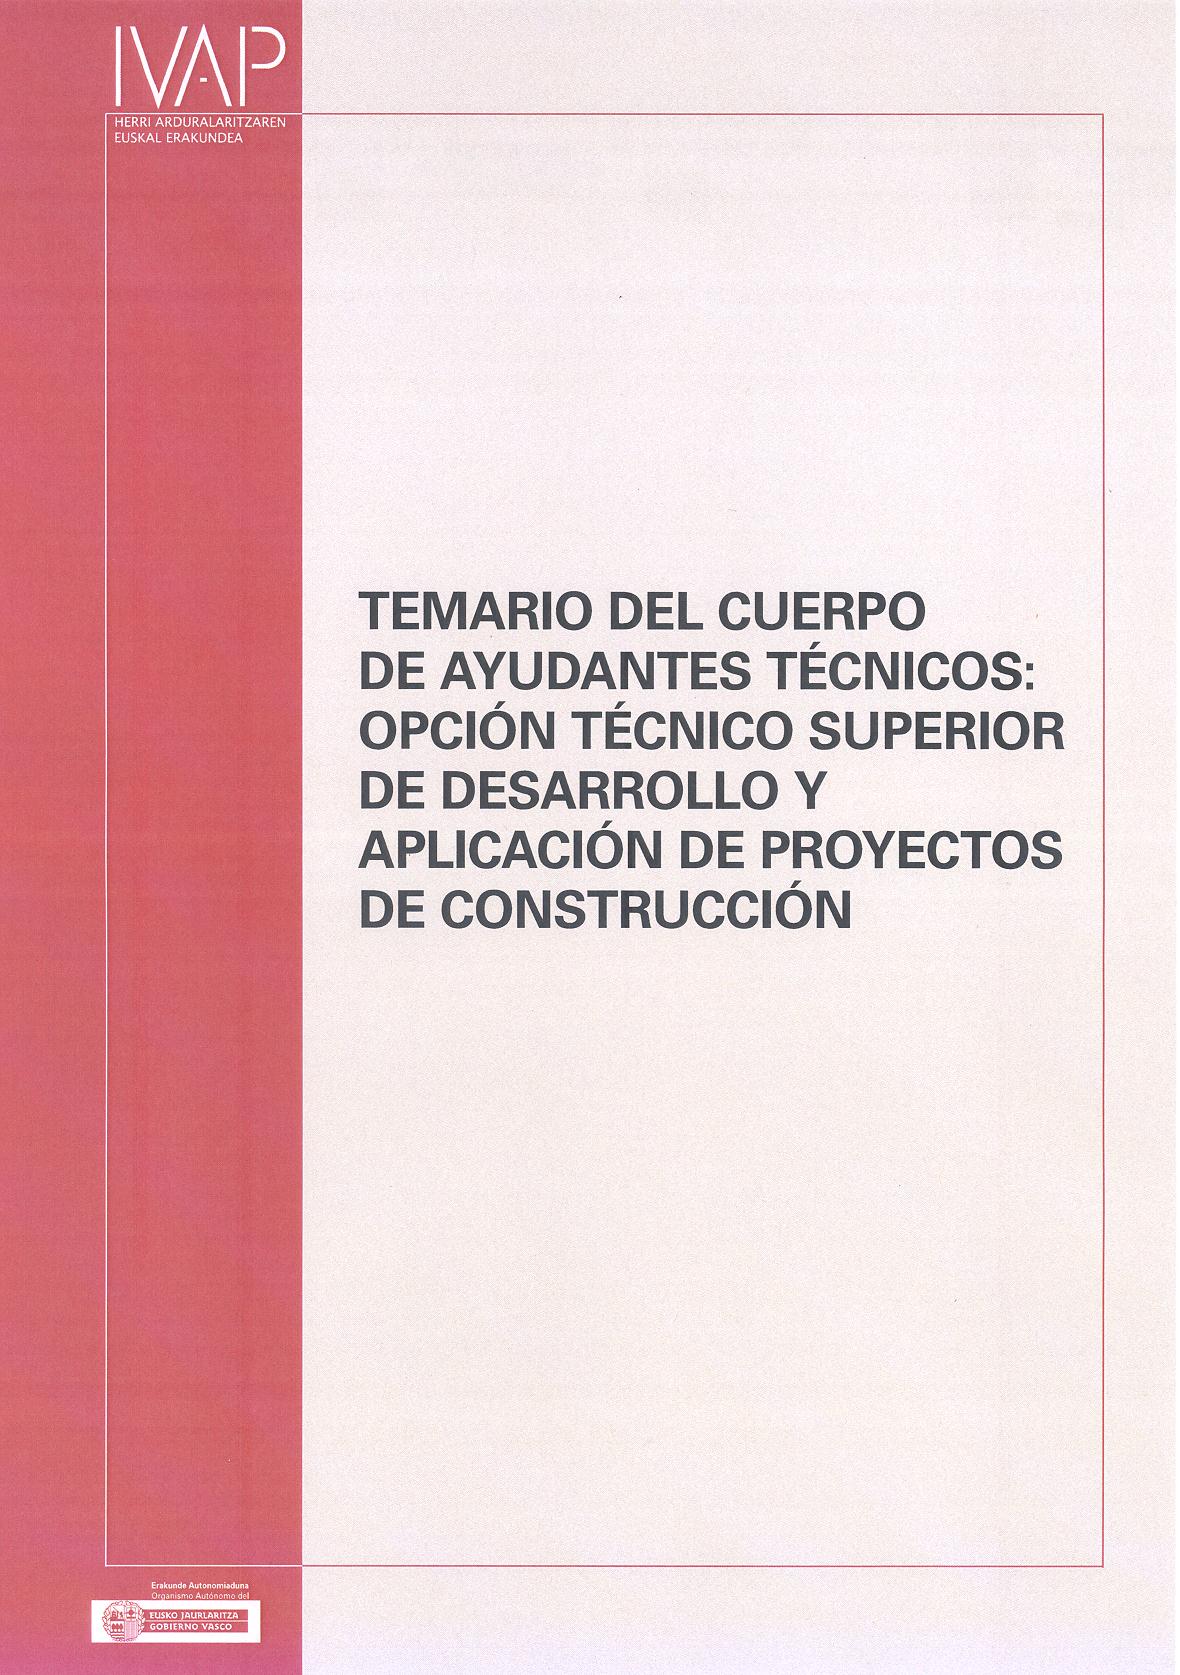 Temario del Cuerpo de Ayudantes Técnicos: Opción Técnico Superior de desarrollo y aplicación de proyectos de construcción